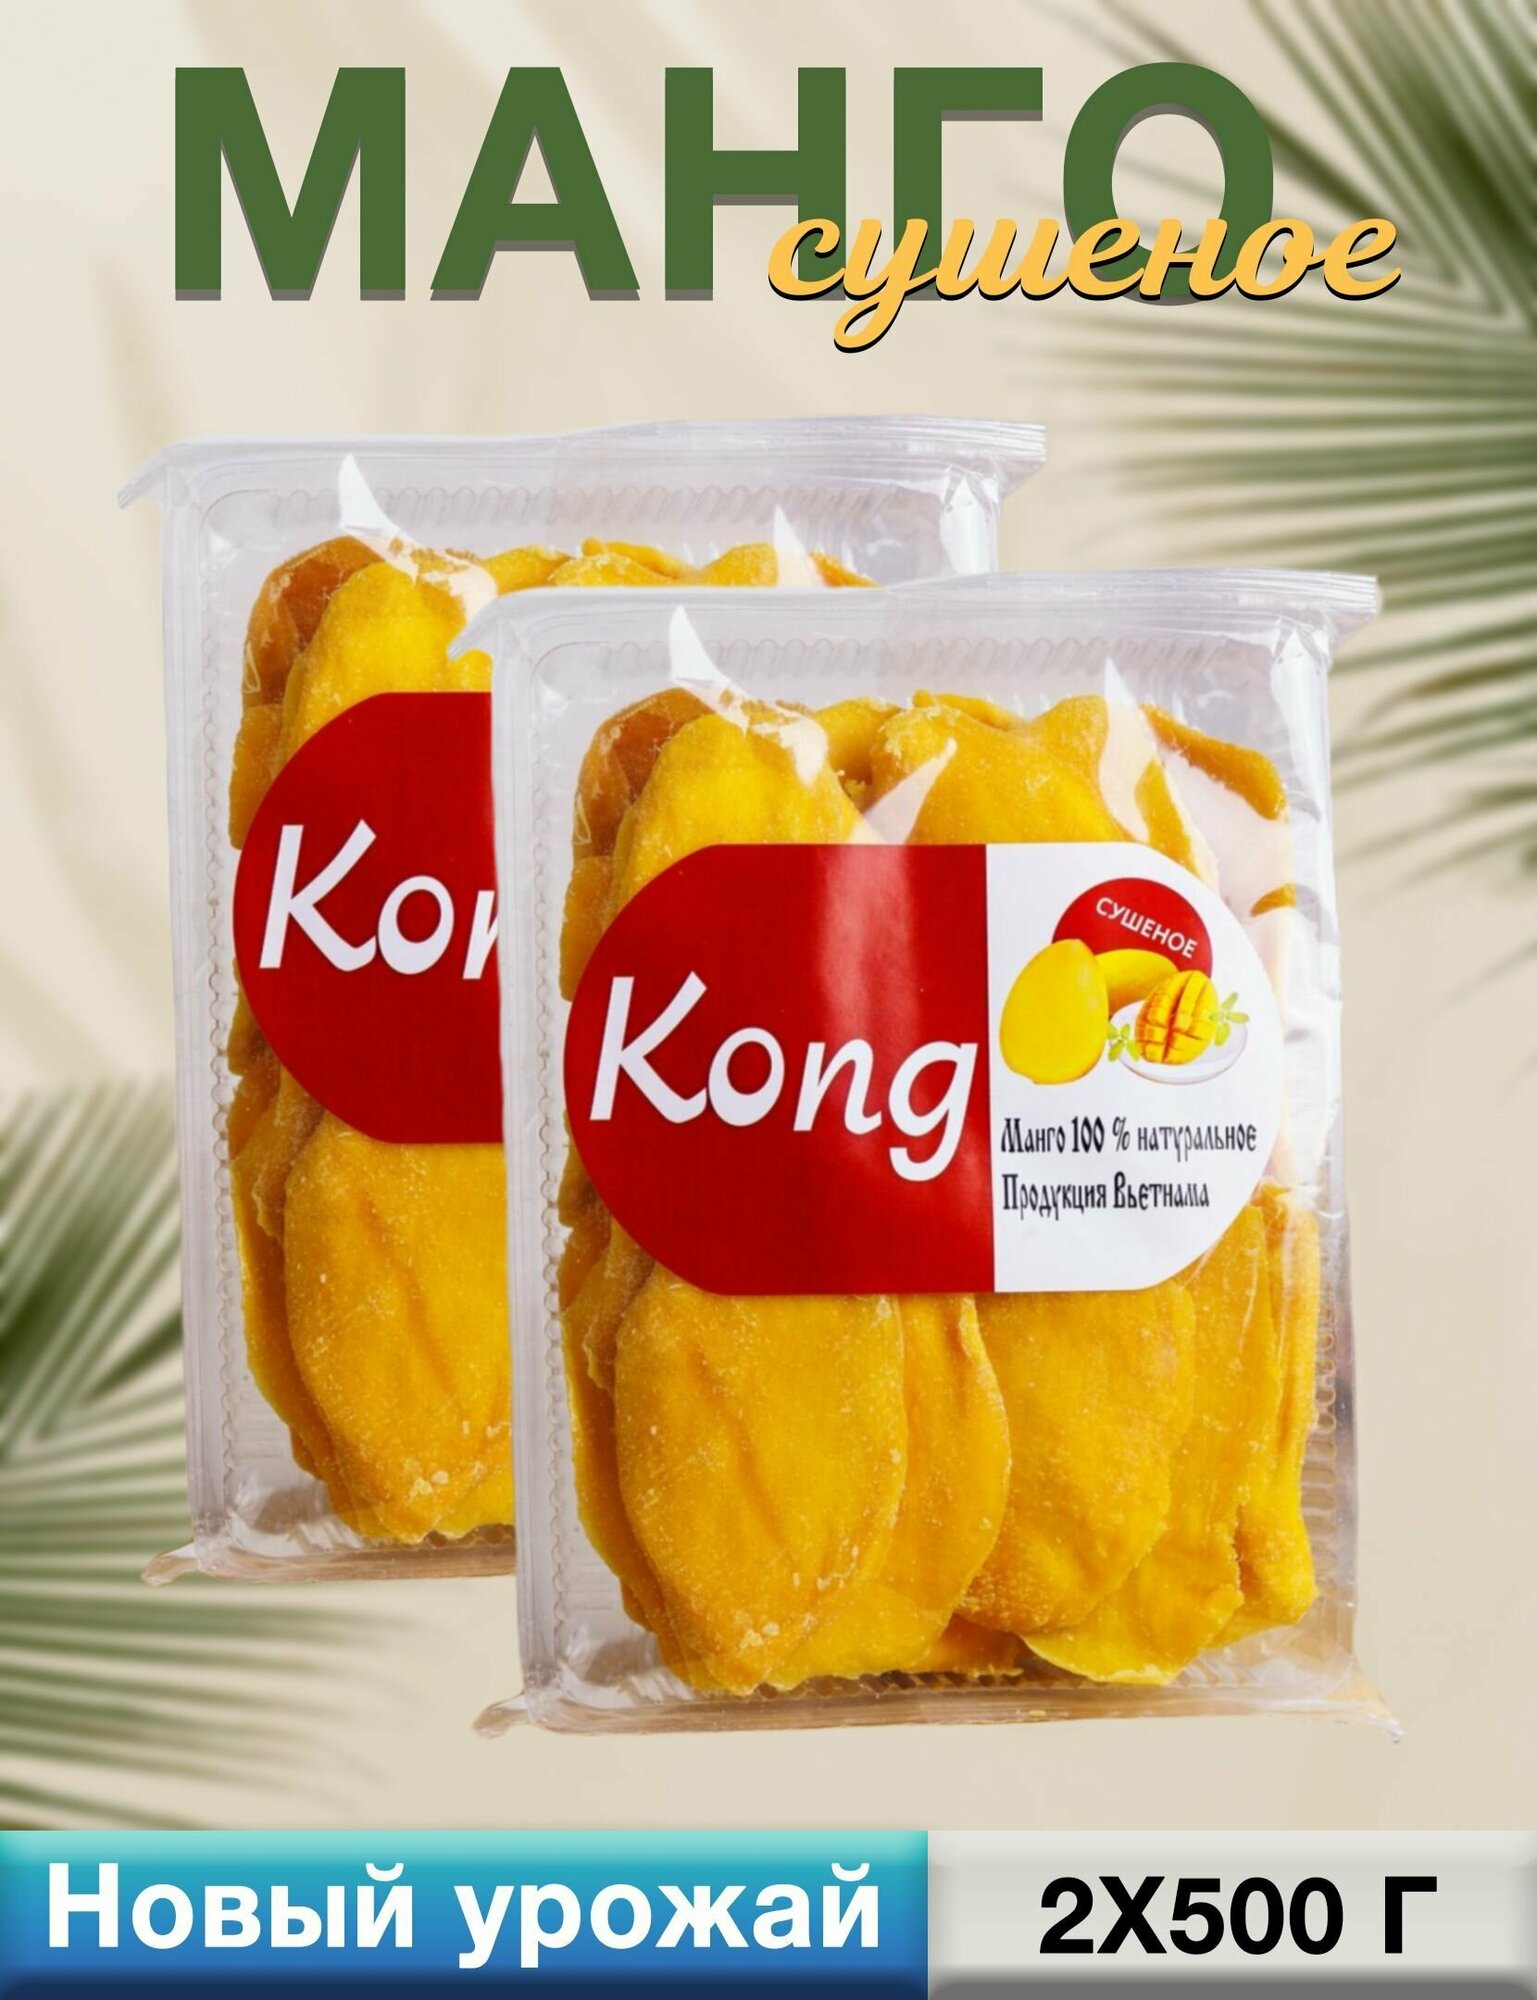 Манго сушеное Конг (Kong)100% натуральное, упаковка 2 по 500гр, 1кг - фотография № 1